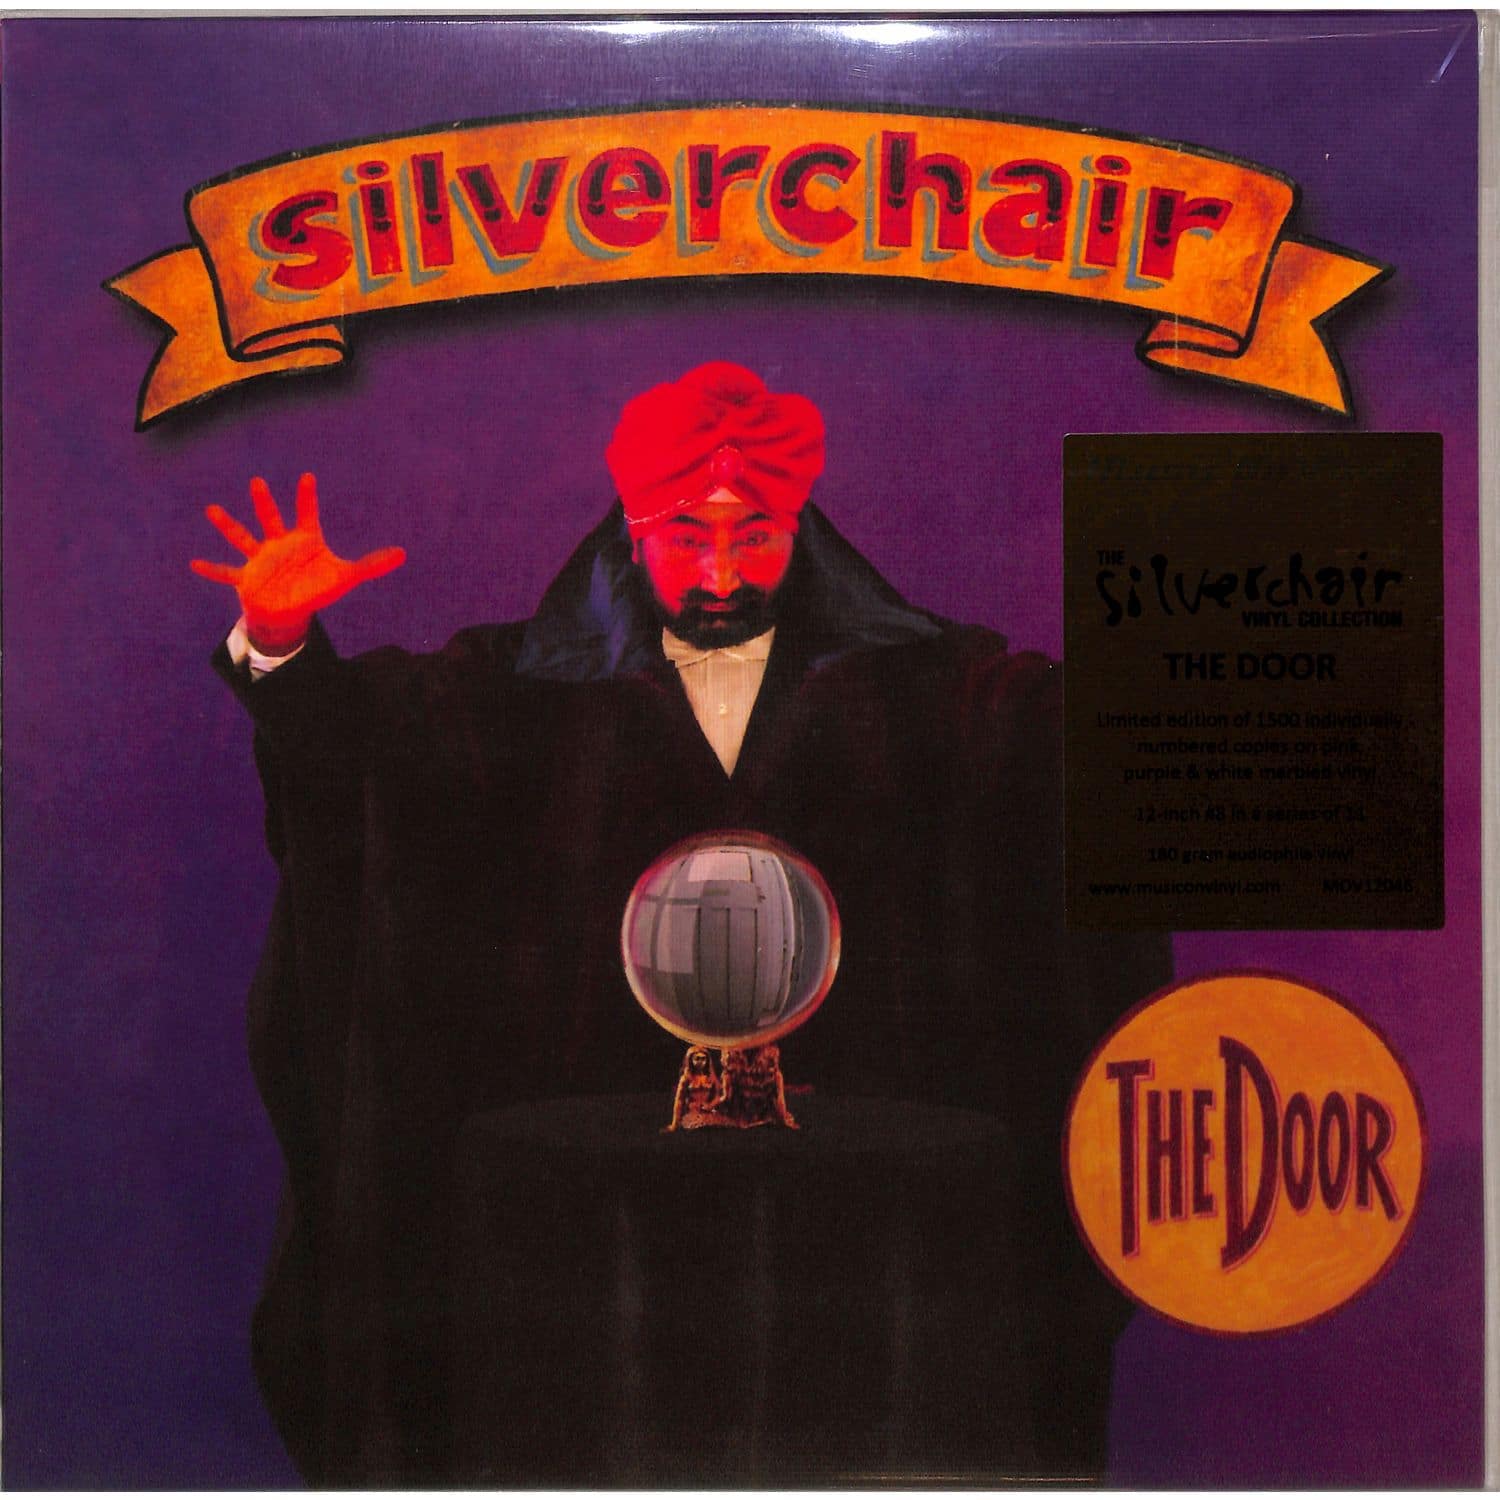 Silverchair - THE DOOR 